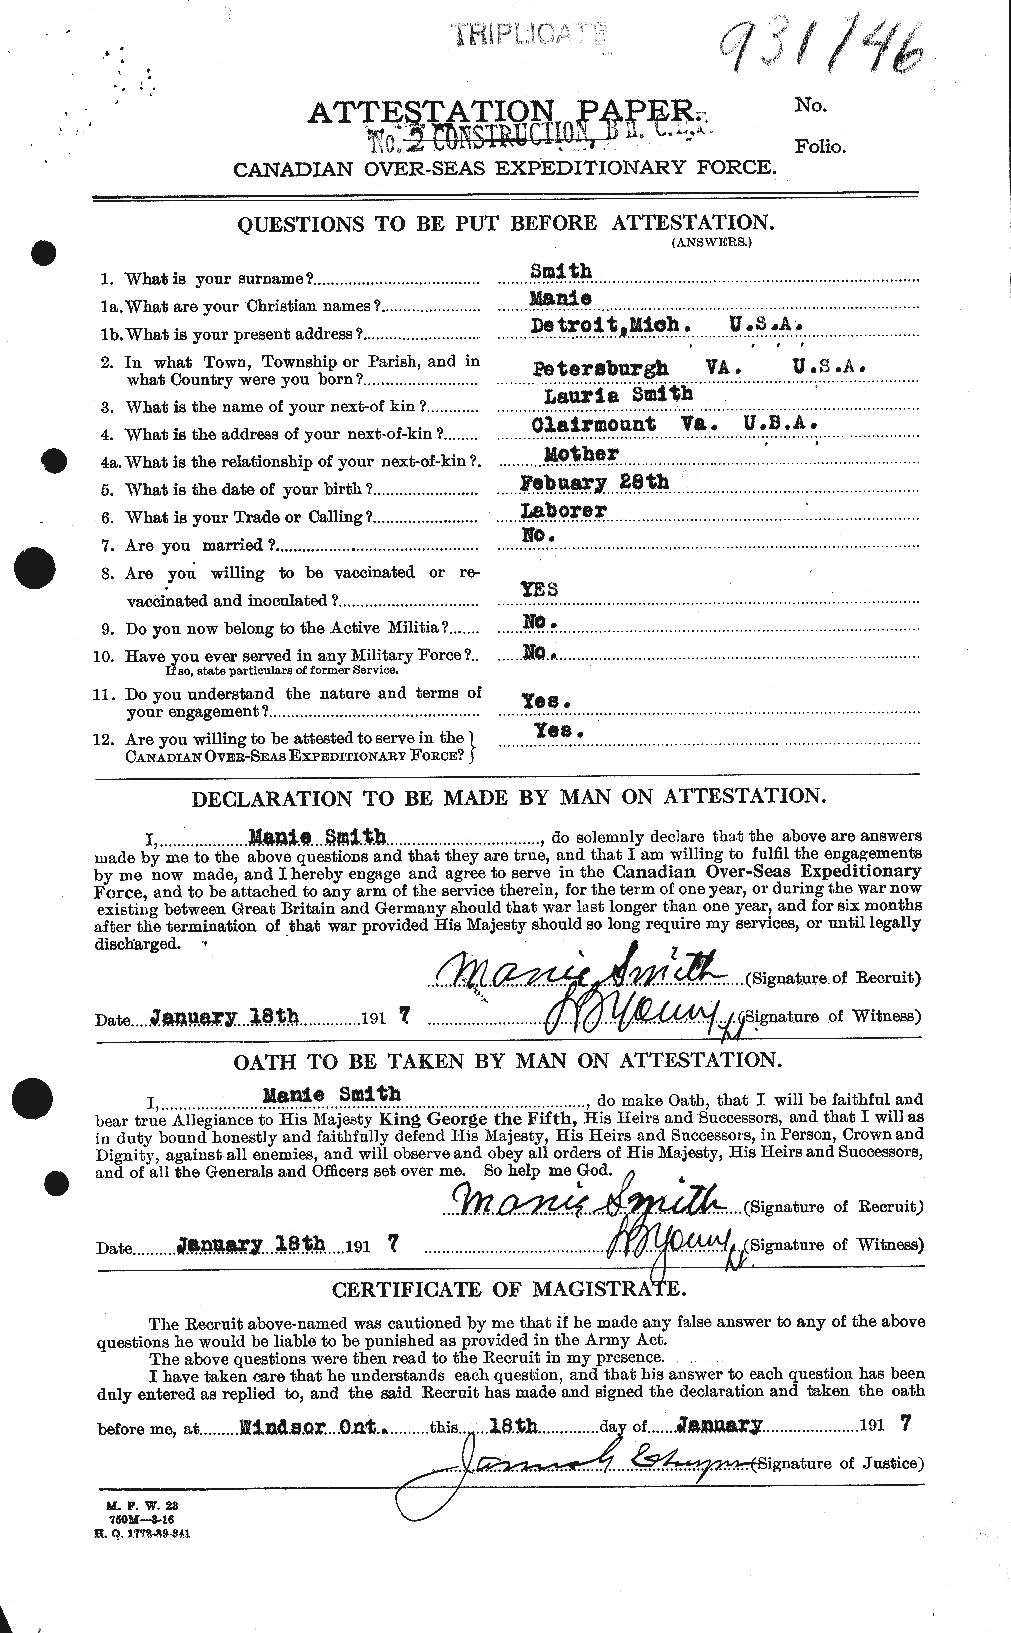 Dossiers du Personnel de la Première Guerre mondiale - CEC 104792a